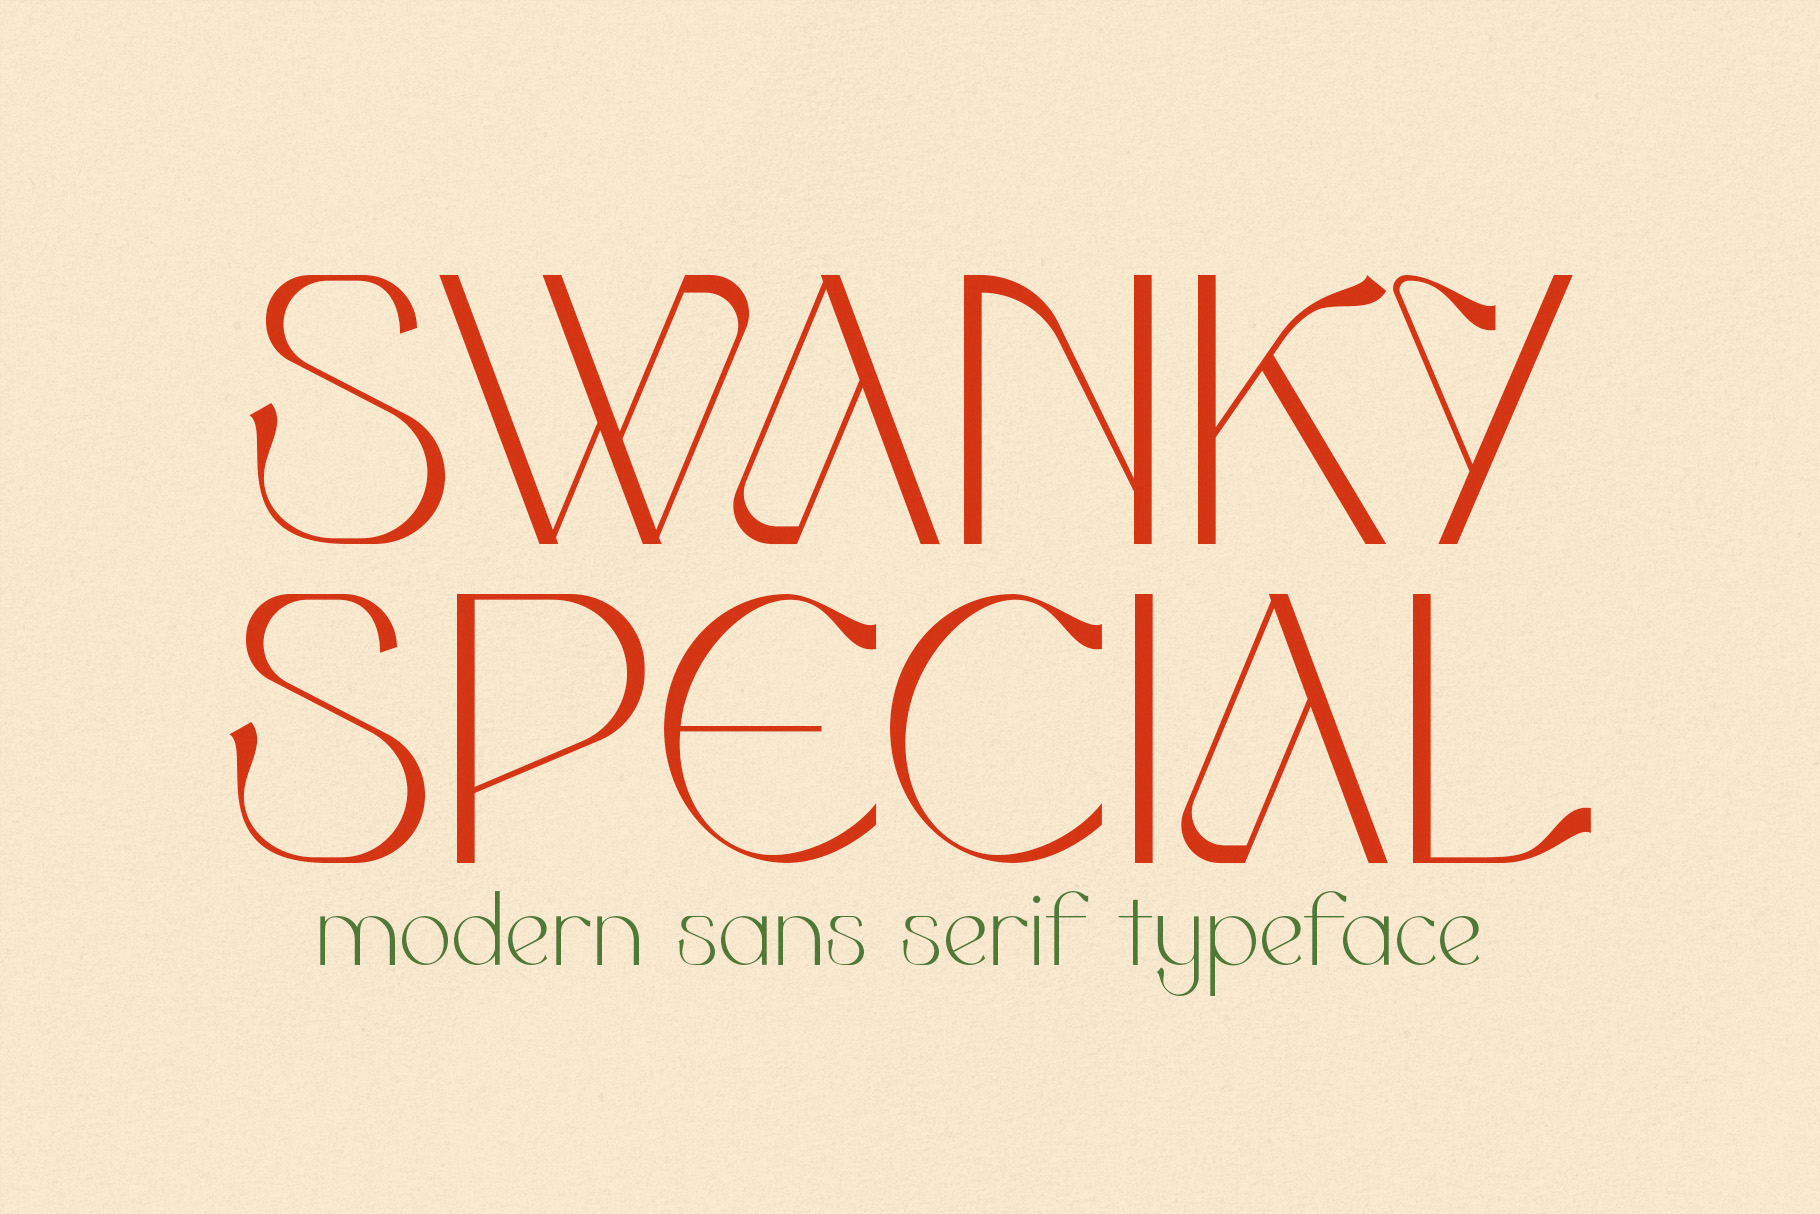 Swanky Special